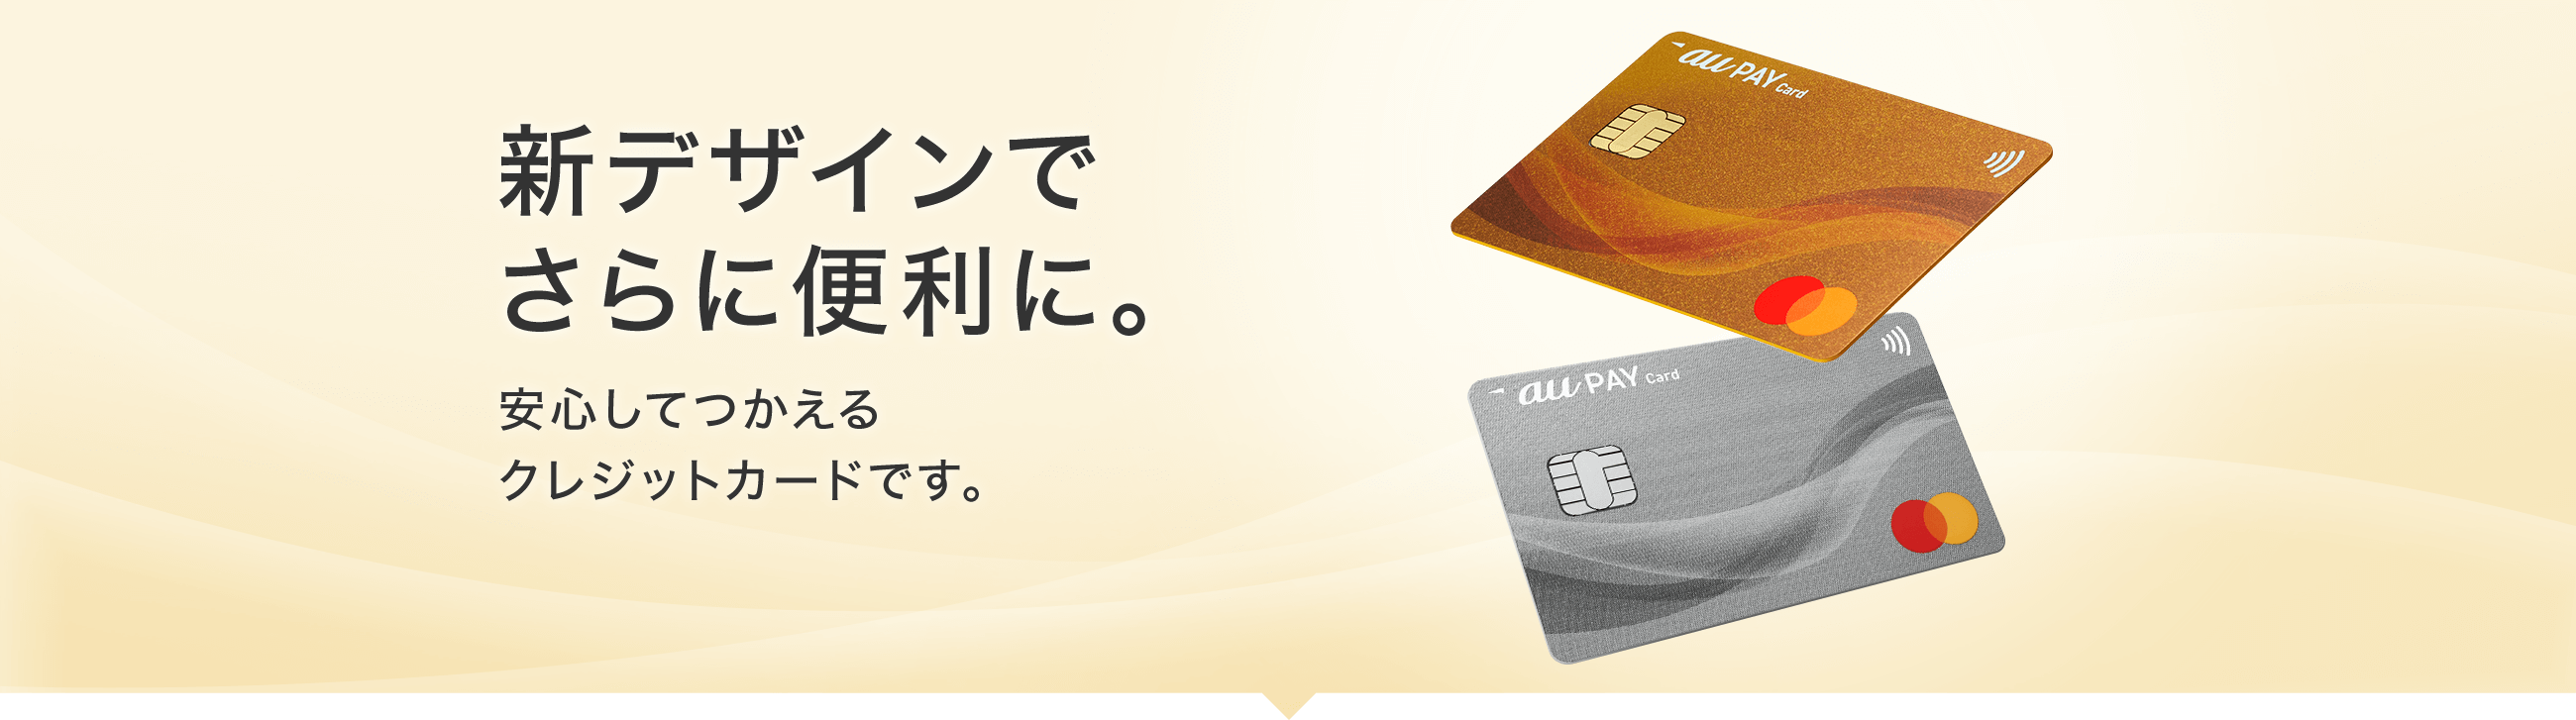 新デザインでさらに便利に。 安心して使えるクレジットカードです。